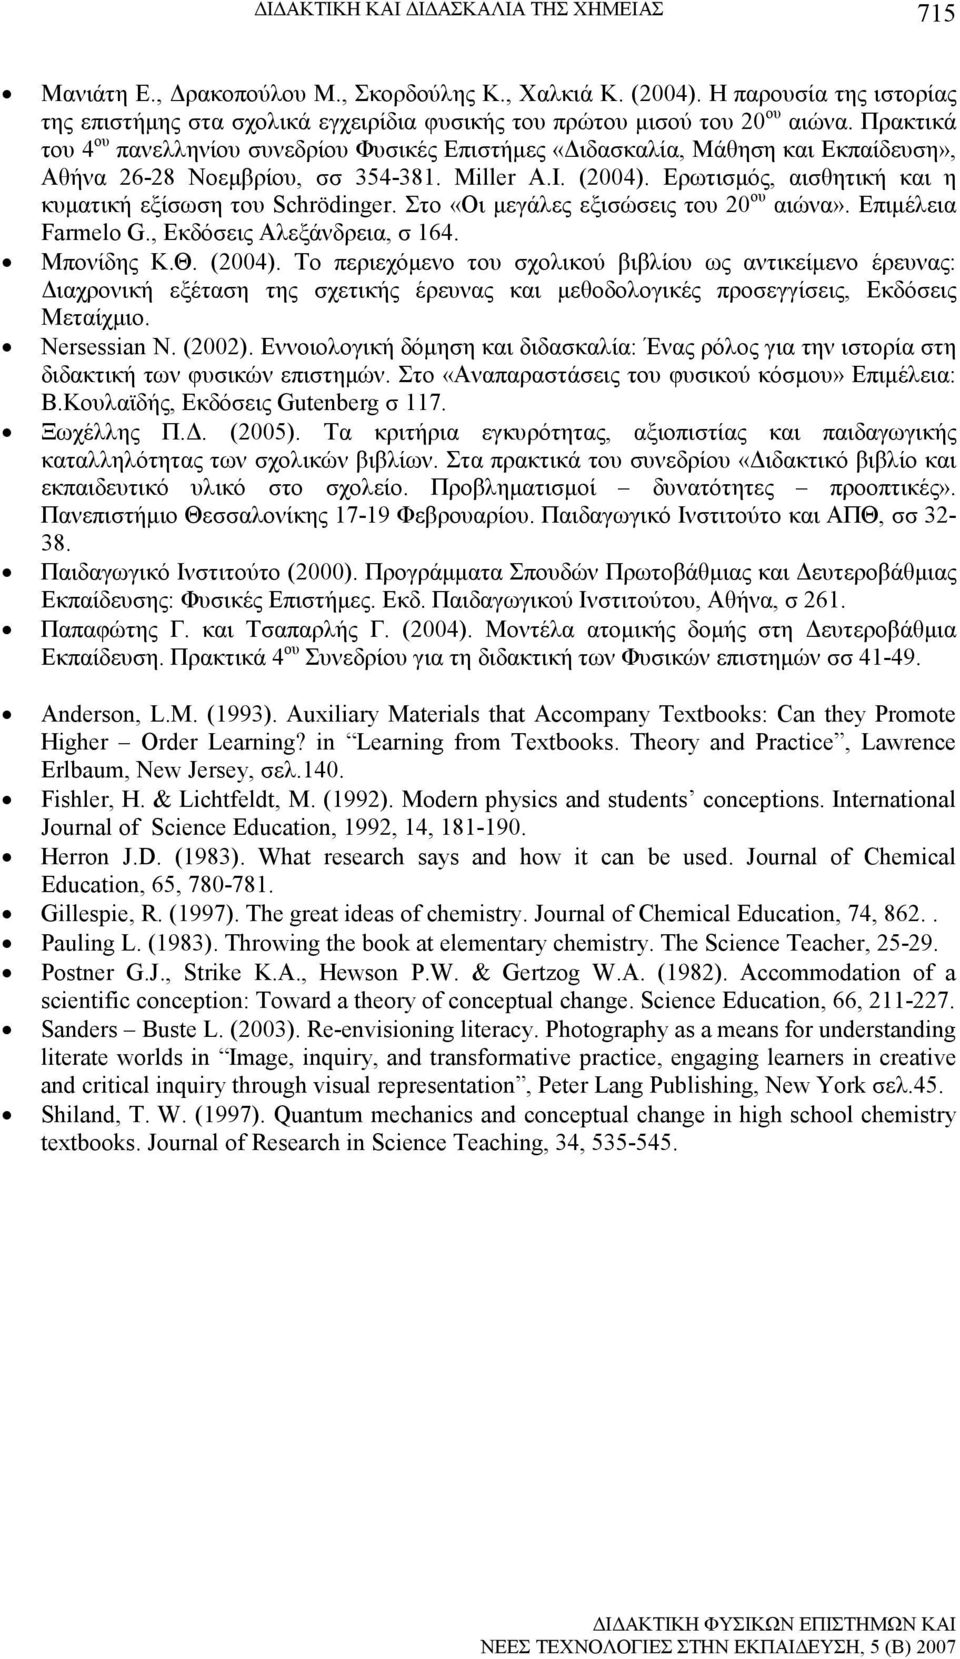 Πρακτικά του 4 ου πανελληνίου συνεδρίου Φυσικές Επιστήµες «ιδασκαλία, Μάθηση και Εκπαίδευση», Αθήνα 26-28 Νοεµβρίου, σσ 354-381. Μiller A.I. (2004).